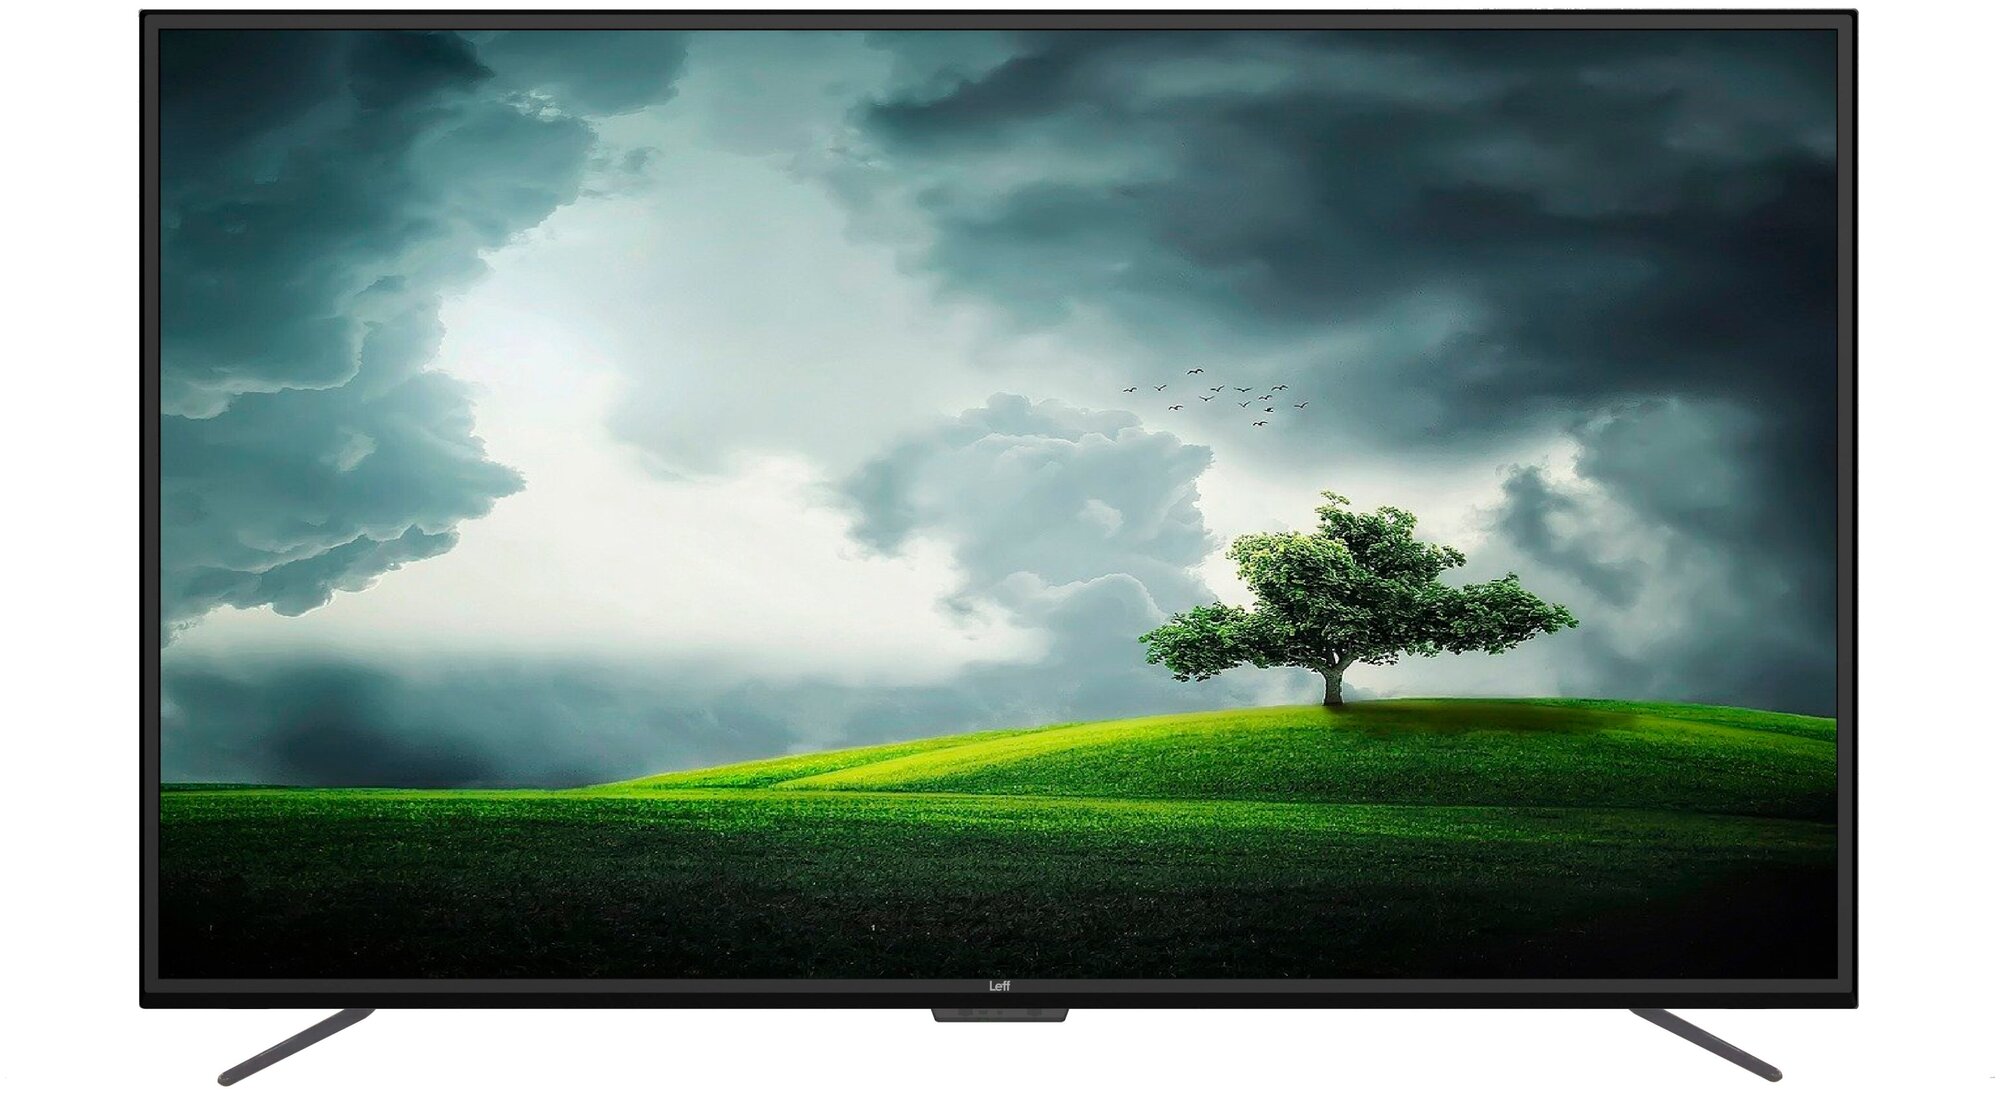 50" Телевизор Leff 50U110S LED, HDR (2020) на платформе Яндекс.ТВ — купить по выгодной цене на Яндекс.Маркете